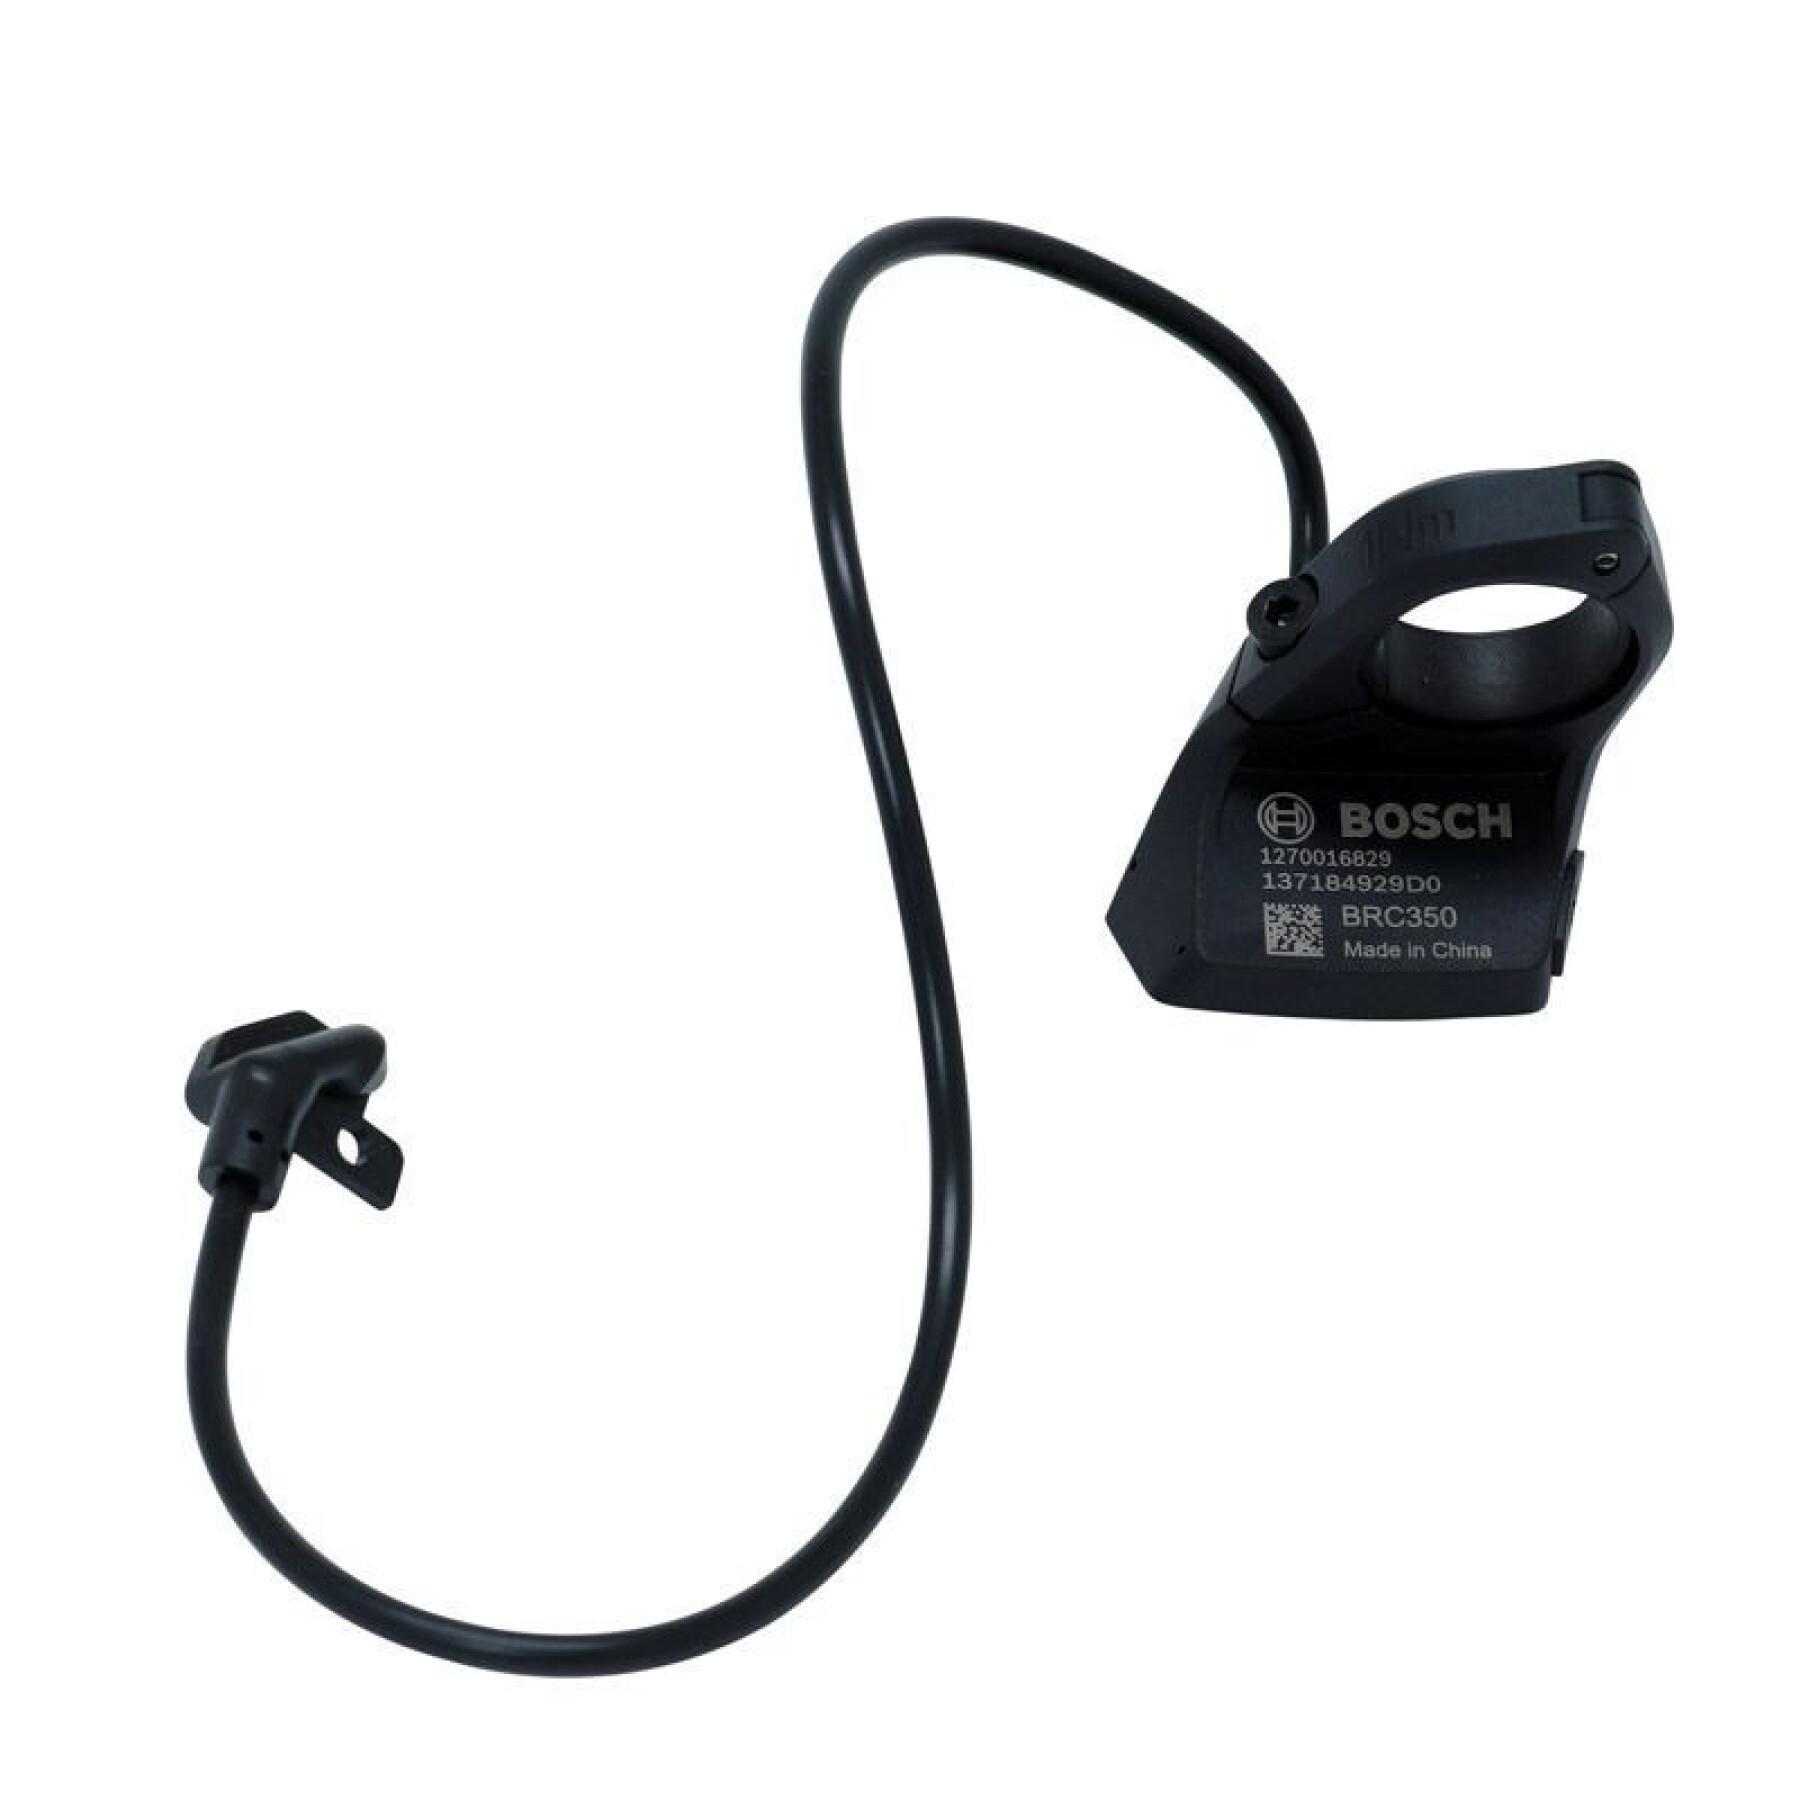 Medidor de control remoto con cable y conectores Bosch Kiox BUI350 et Nyon BUI330